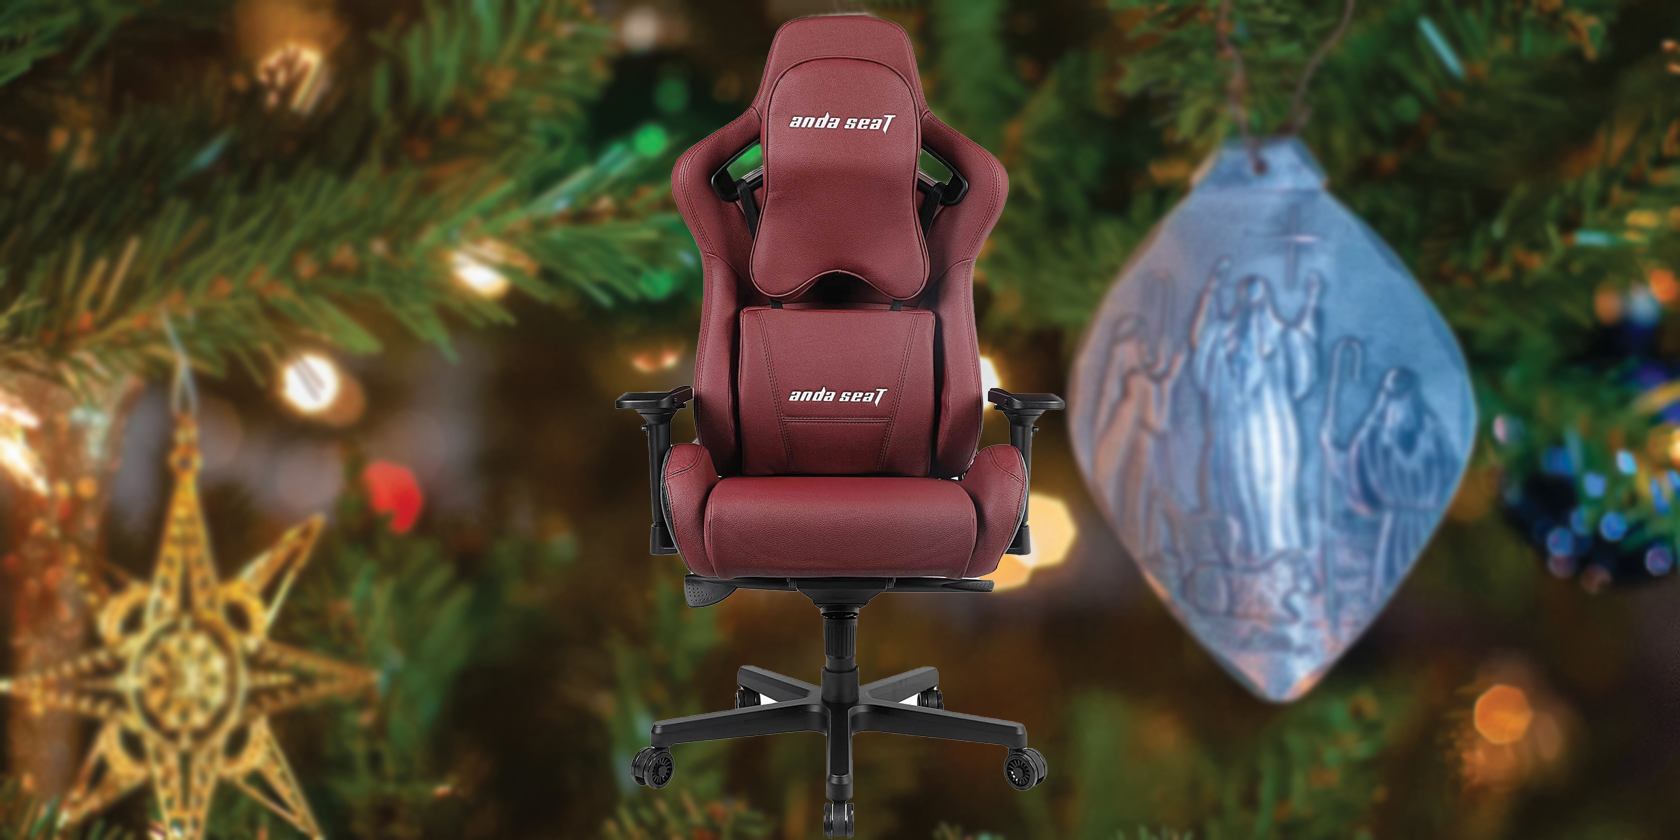 Andaseat Kaiser 2 gaming chair